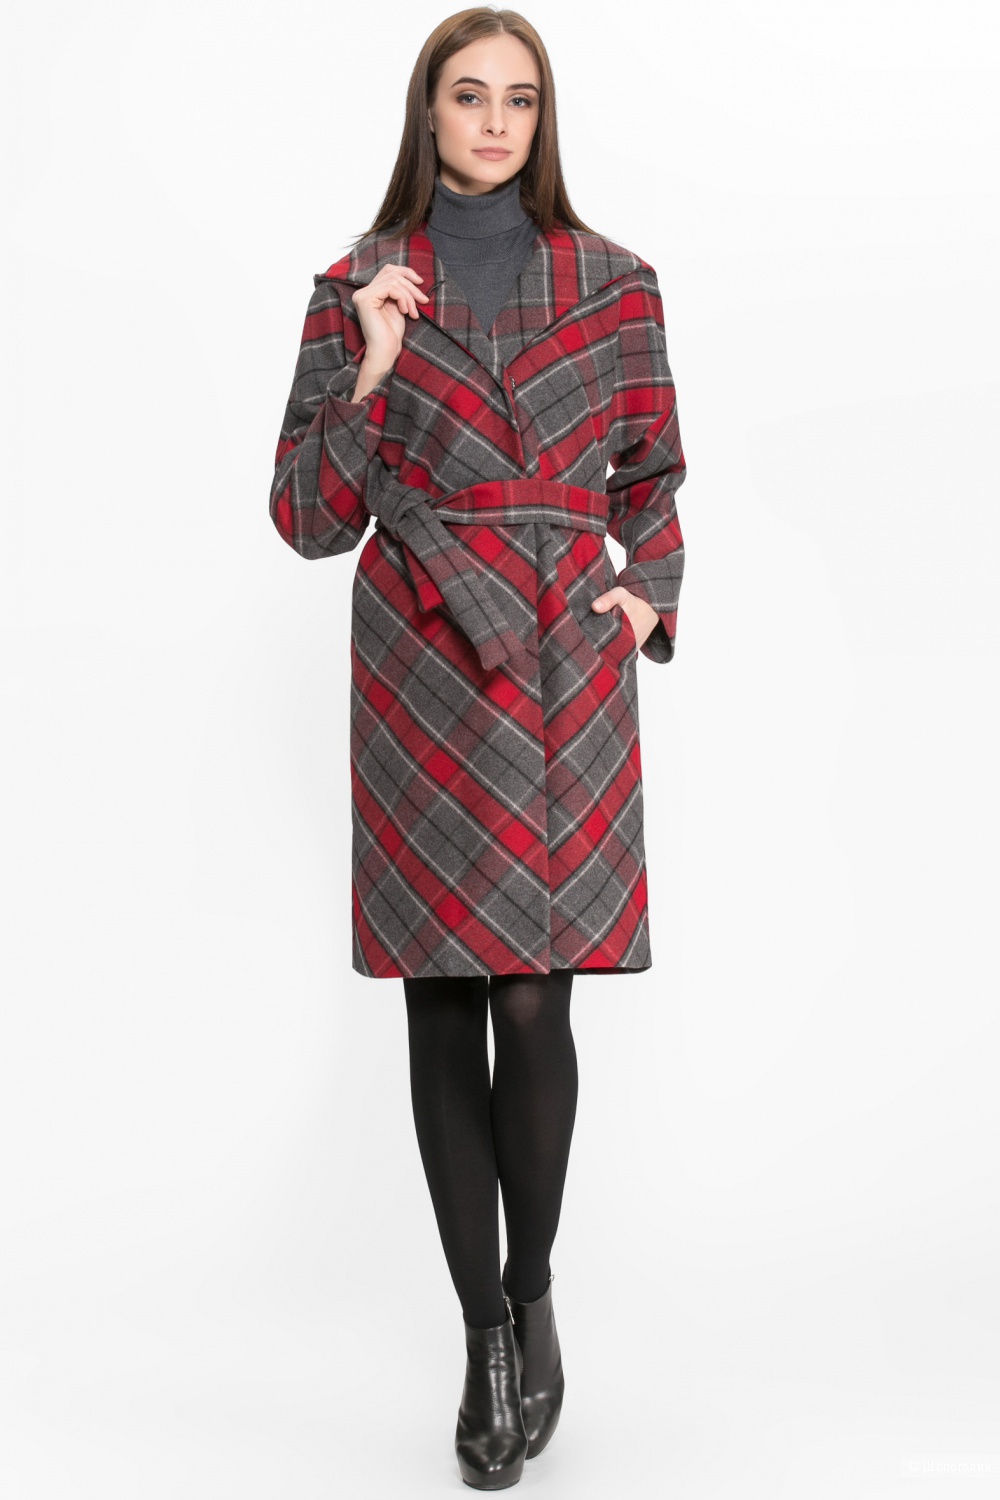 Пальто Style National ( Россия) , 48-50 размер